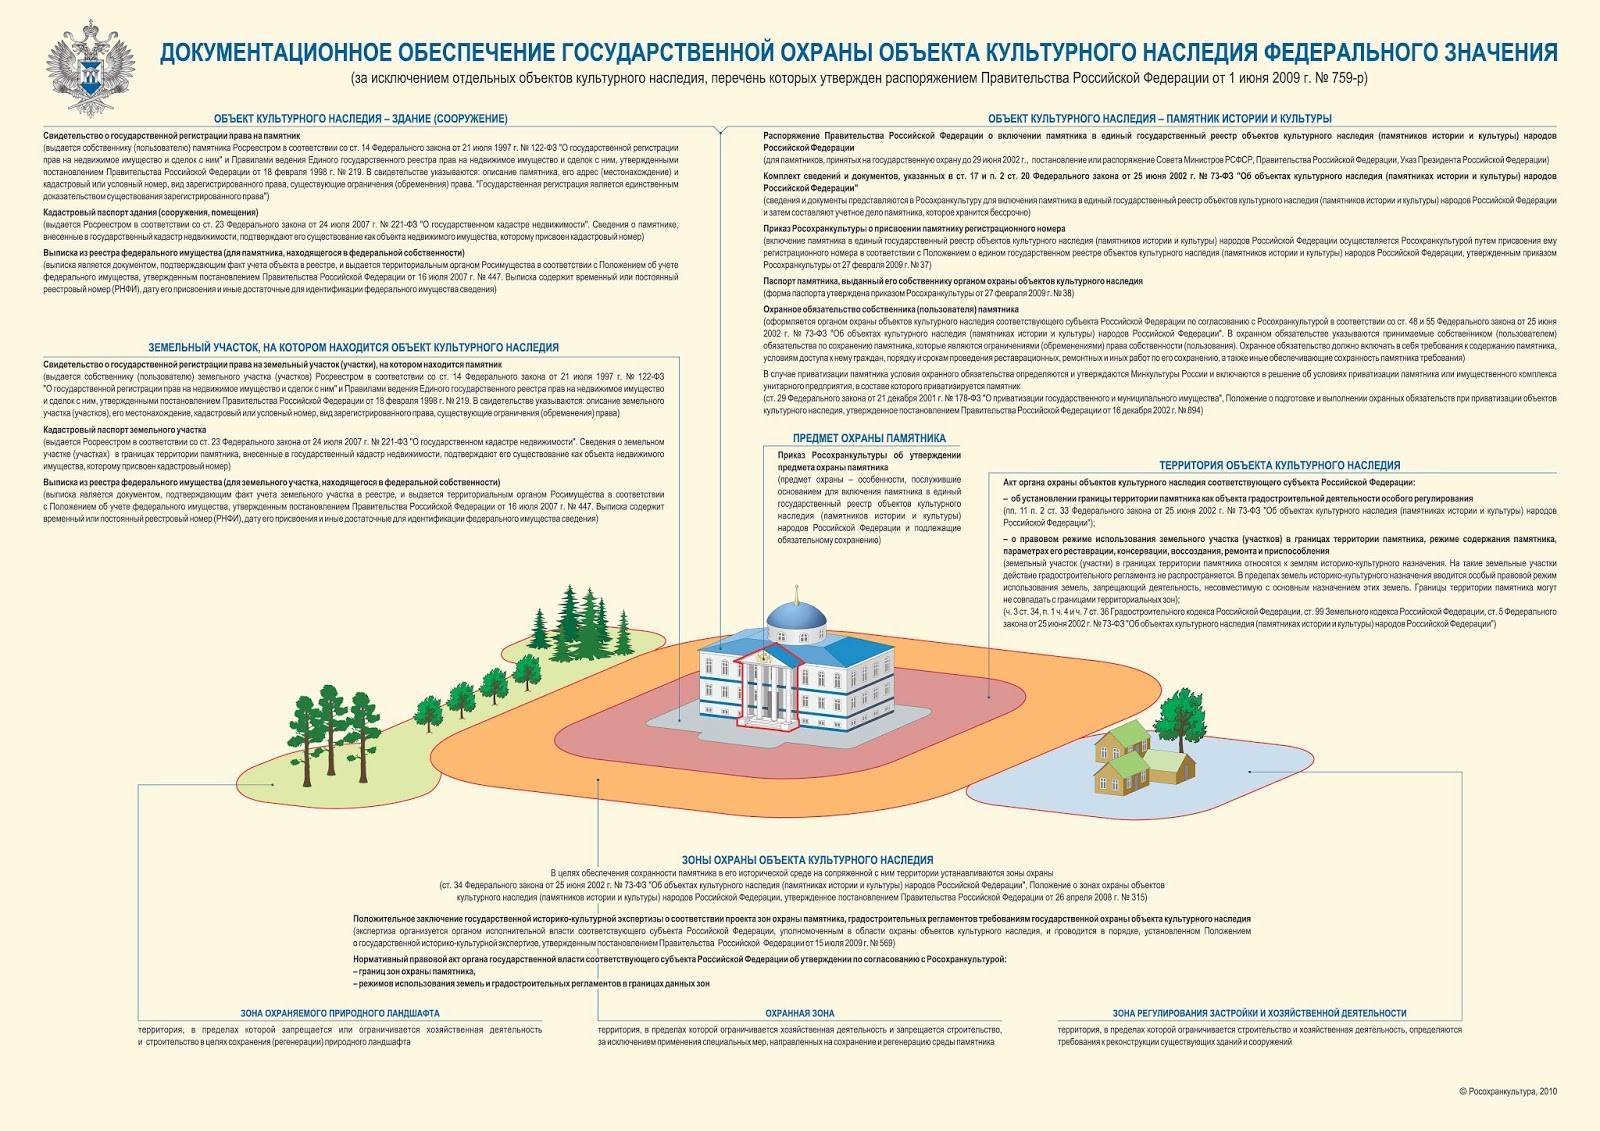 Получение лицензии на реставрацию объектов культурного наследия россии: 11 обязательных документов